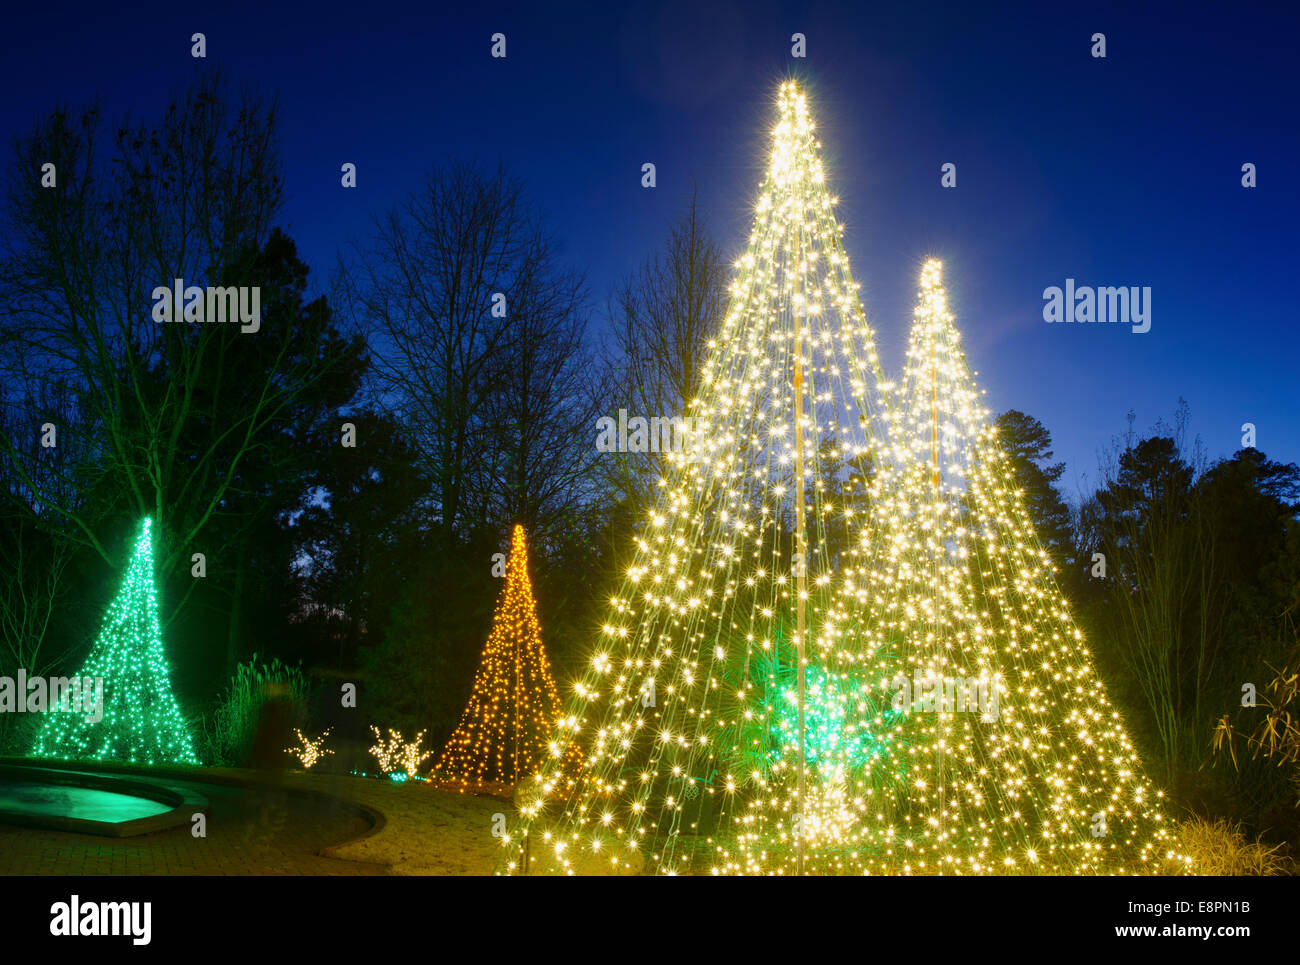 Les arbres de Noël en plein air ont été créés par décorer avec du rouge, blanc et vert s'allume et tourné contre un brillant ciel bleu. Banque D'Images